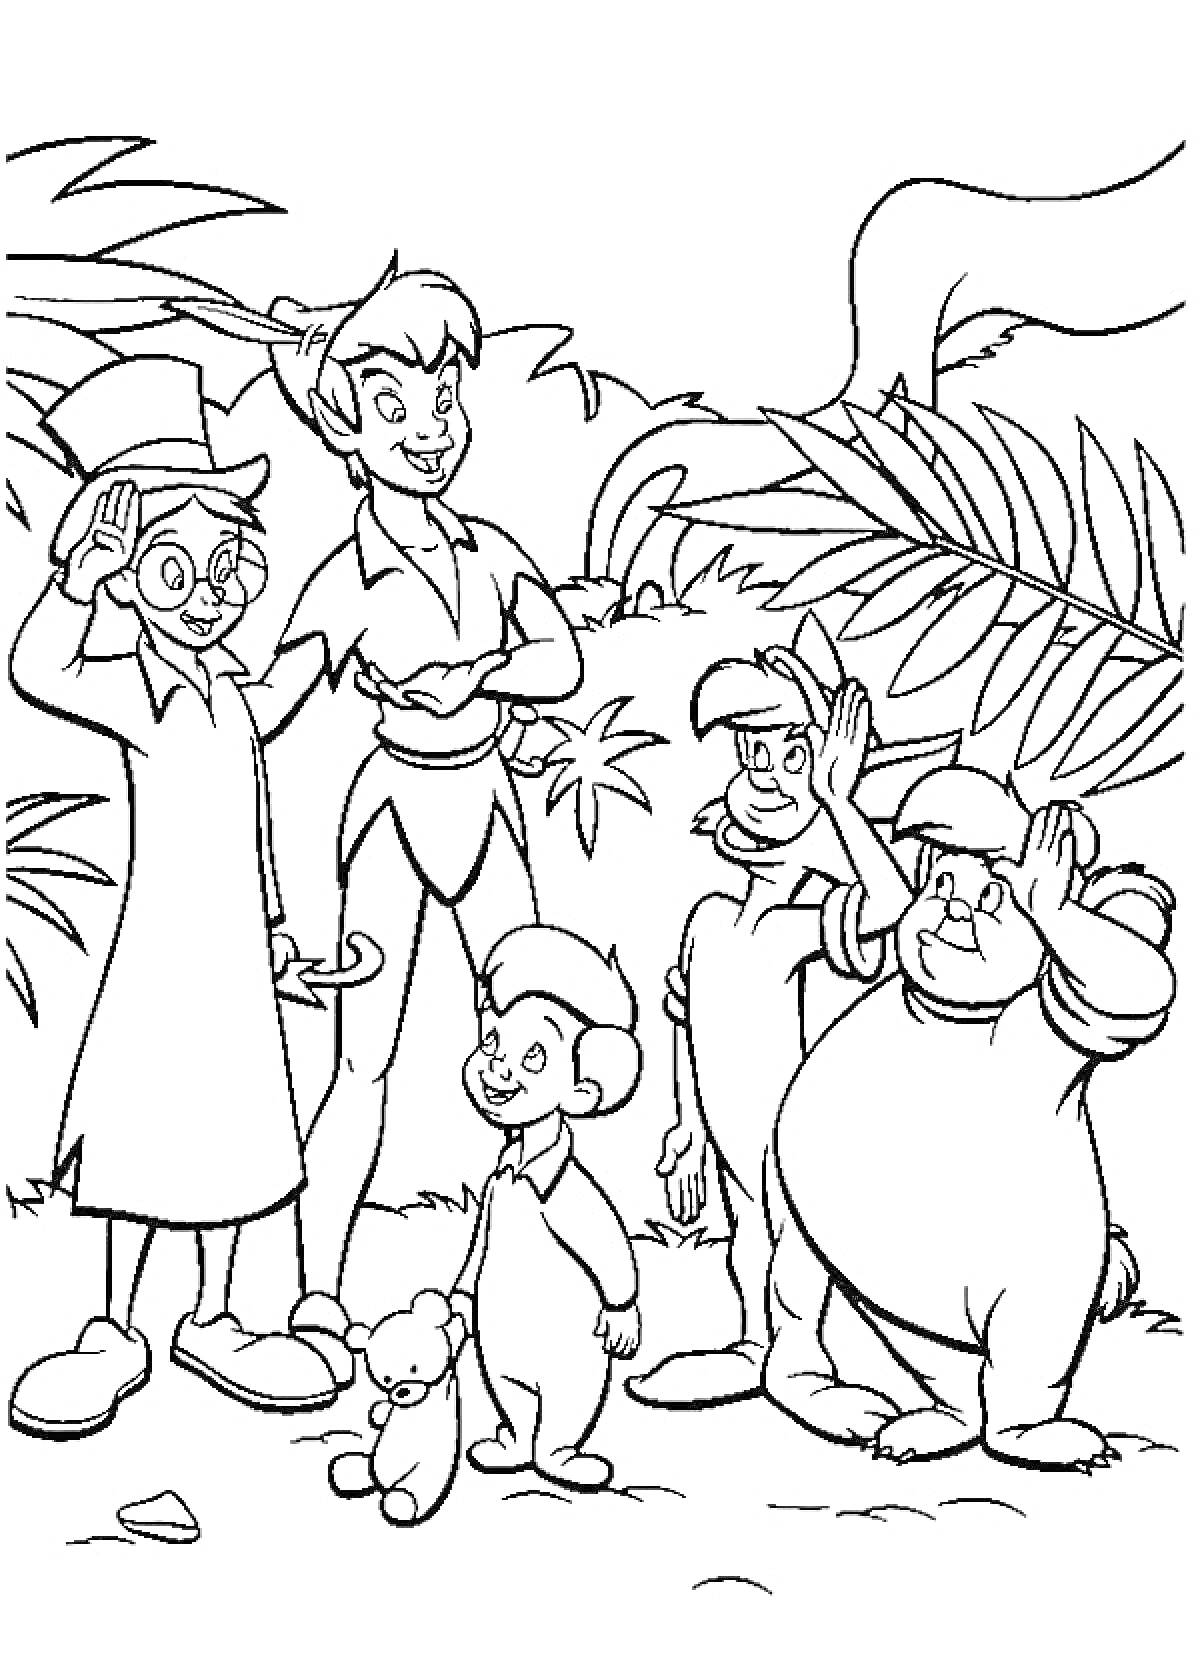 Раскраска Питер Пен с детьми в джунглях